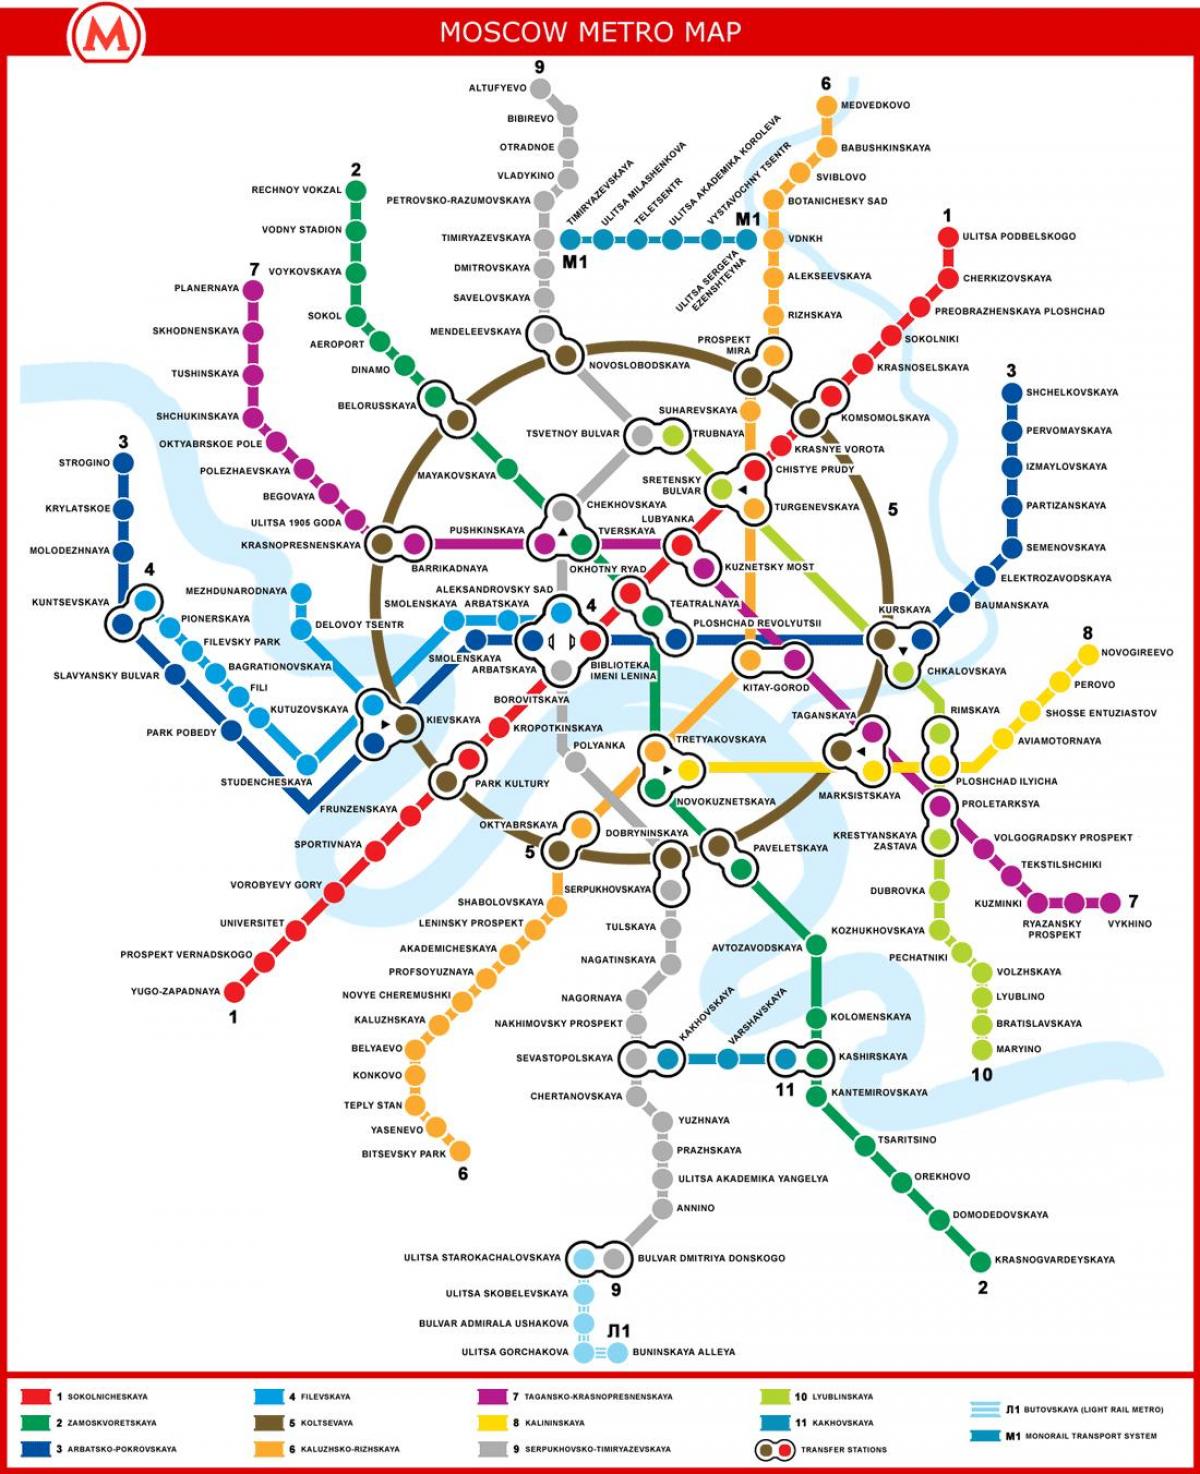 צינור המפה מוסקבה